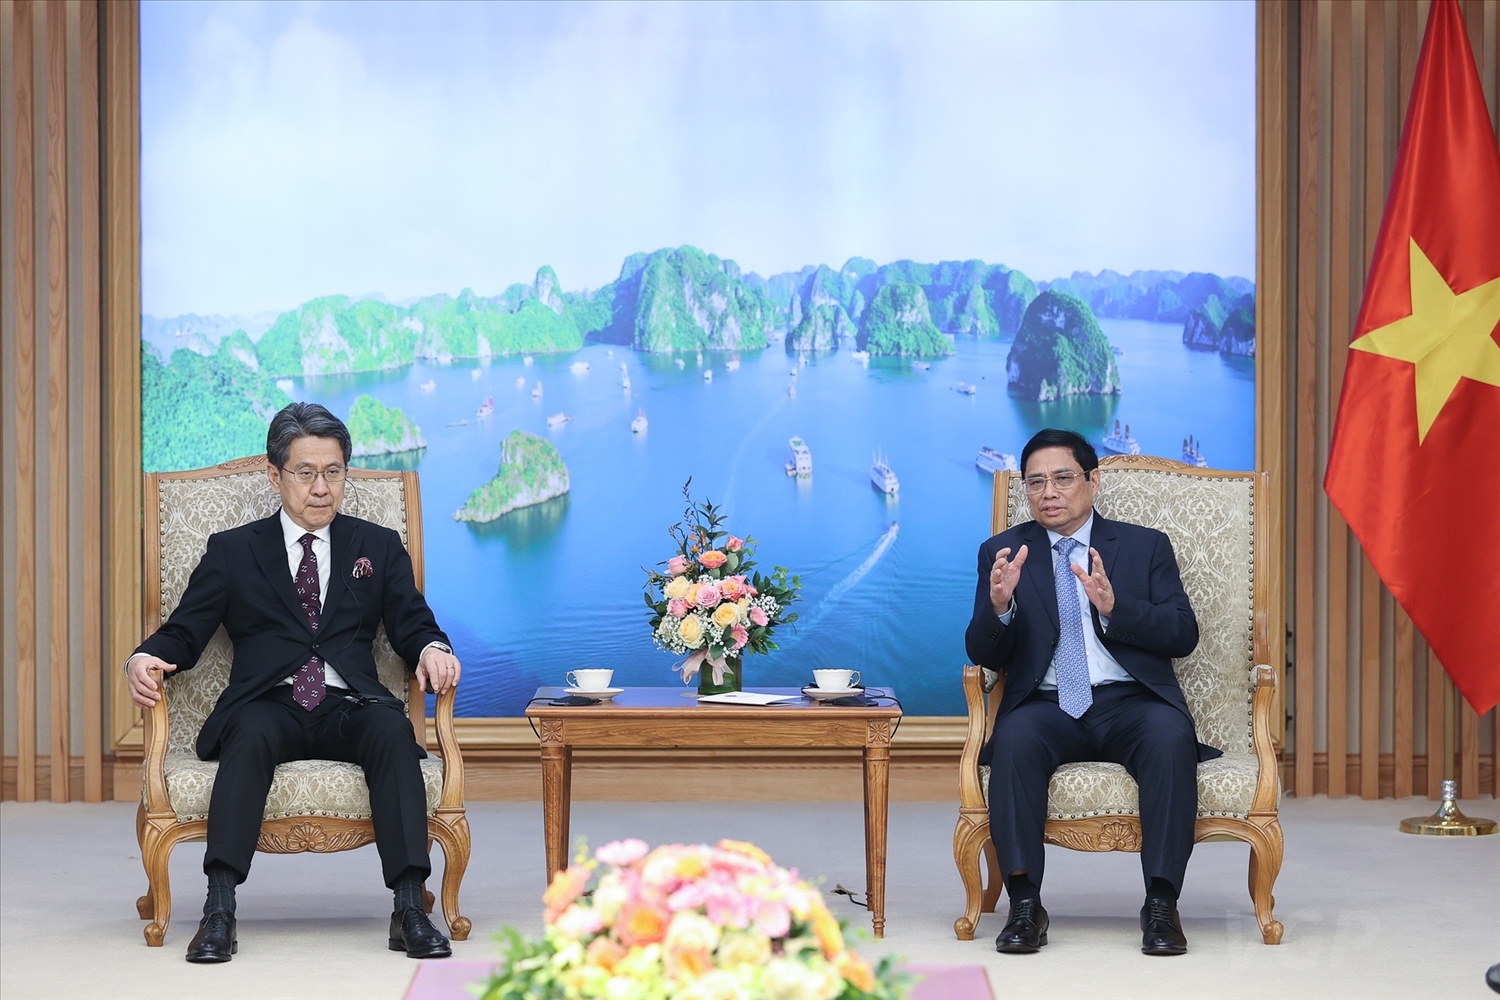 Thủ tướng nhấn mạnh đề nghị phía Nhật Bản và JBIC giúp đỡ Việt Nam xây dựng nền kinh tế tăng trưởng nhanh, bền vững, quy mô lớn hơn, độc lập tự chủ ngày càng cao gắn với tích cực, chủ động hội nhập quốc tế sâu rộng, thực chất, hiệu quả - Ảnh: VGP/Nhật Bắc